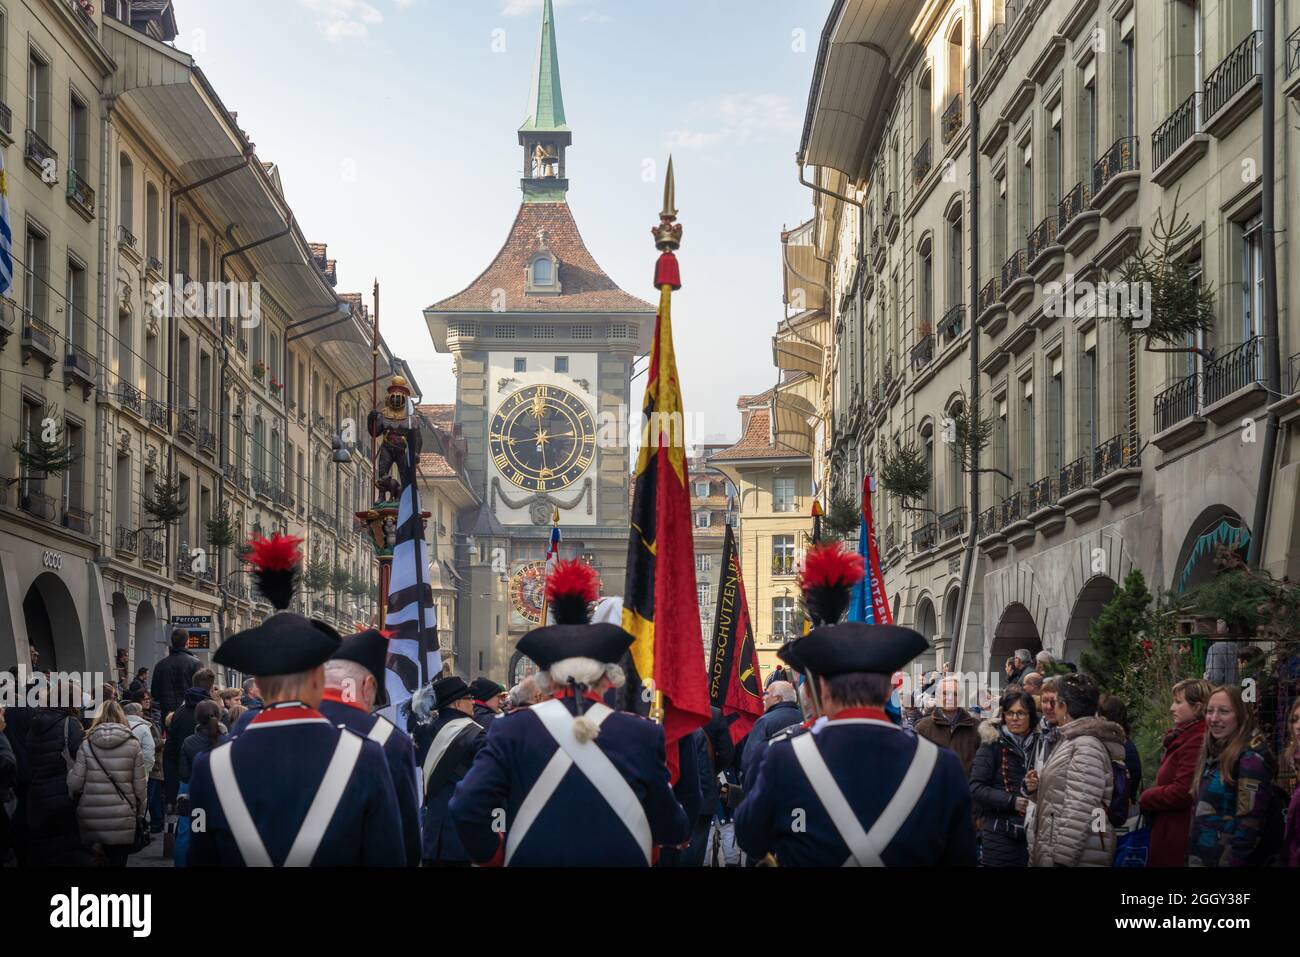 Zytglogge et une parade de soldats suisses en costume traditionnel pendant les vacances Zibelemarit (marché Onion) - Berne, Suisse Banque D'Images